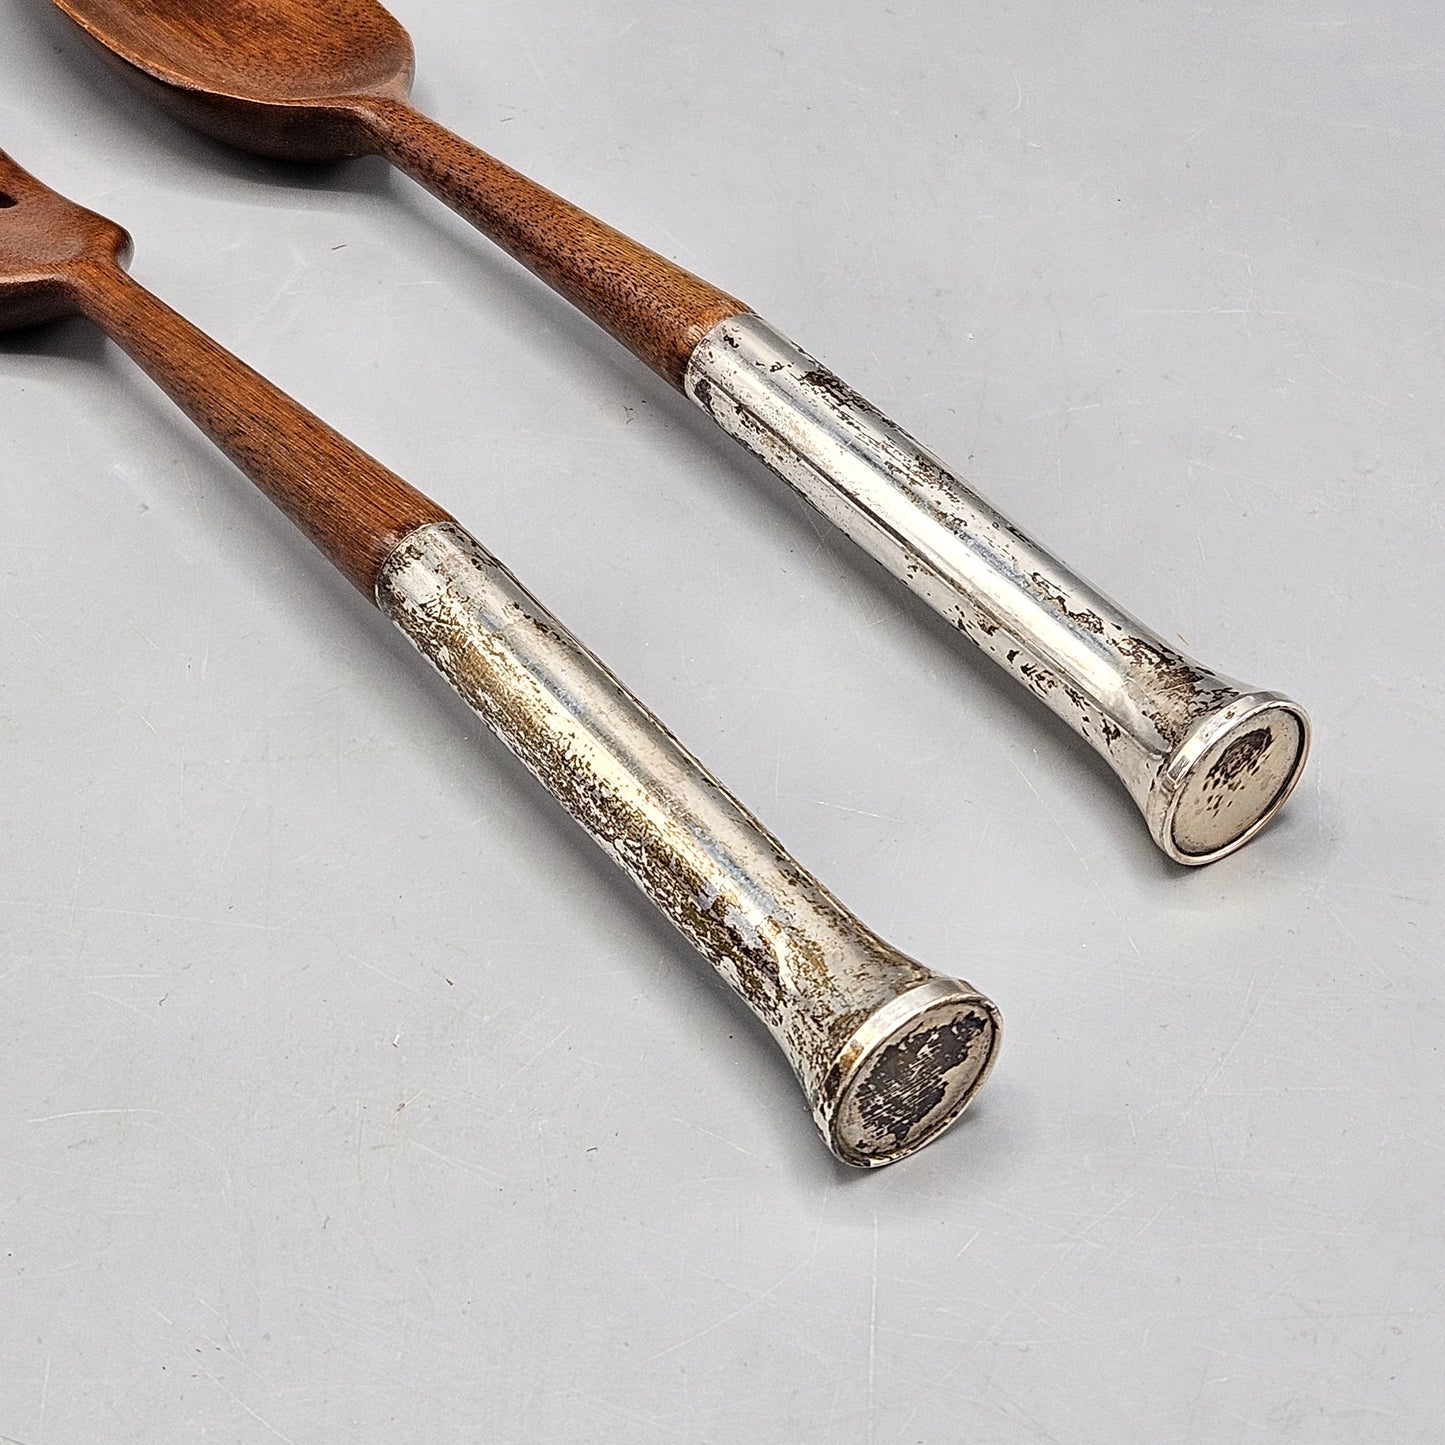 Pair of Vintage Sterling Silver & Wood Salad Serving Spoon & Fork by Gorham